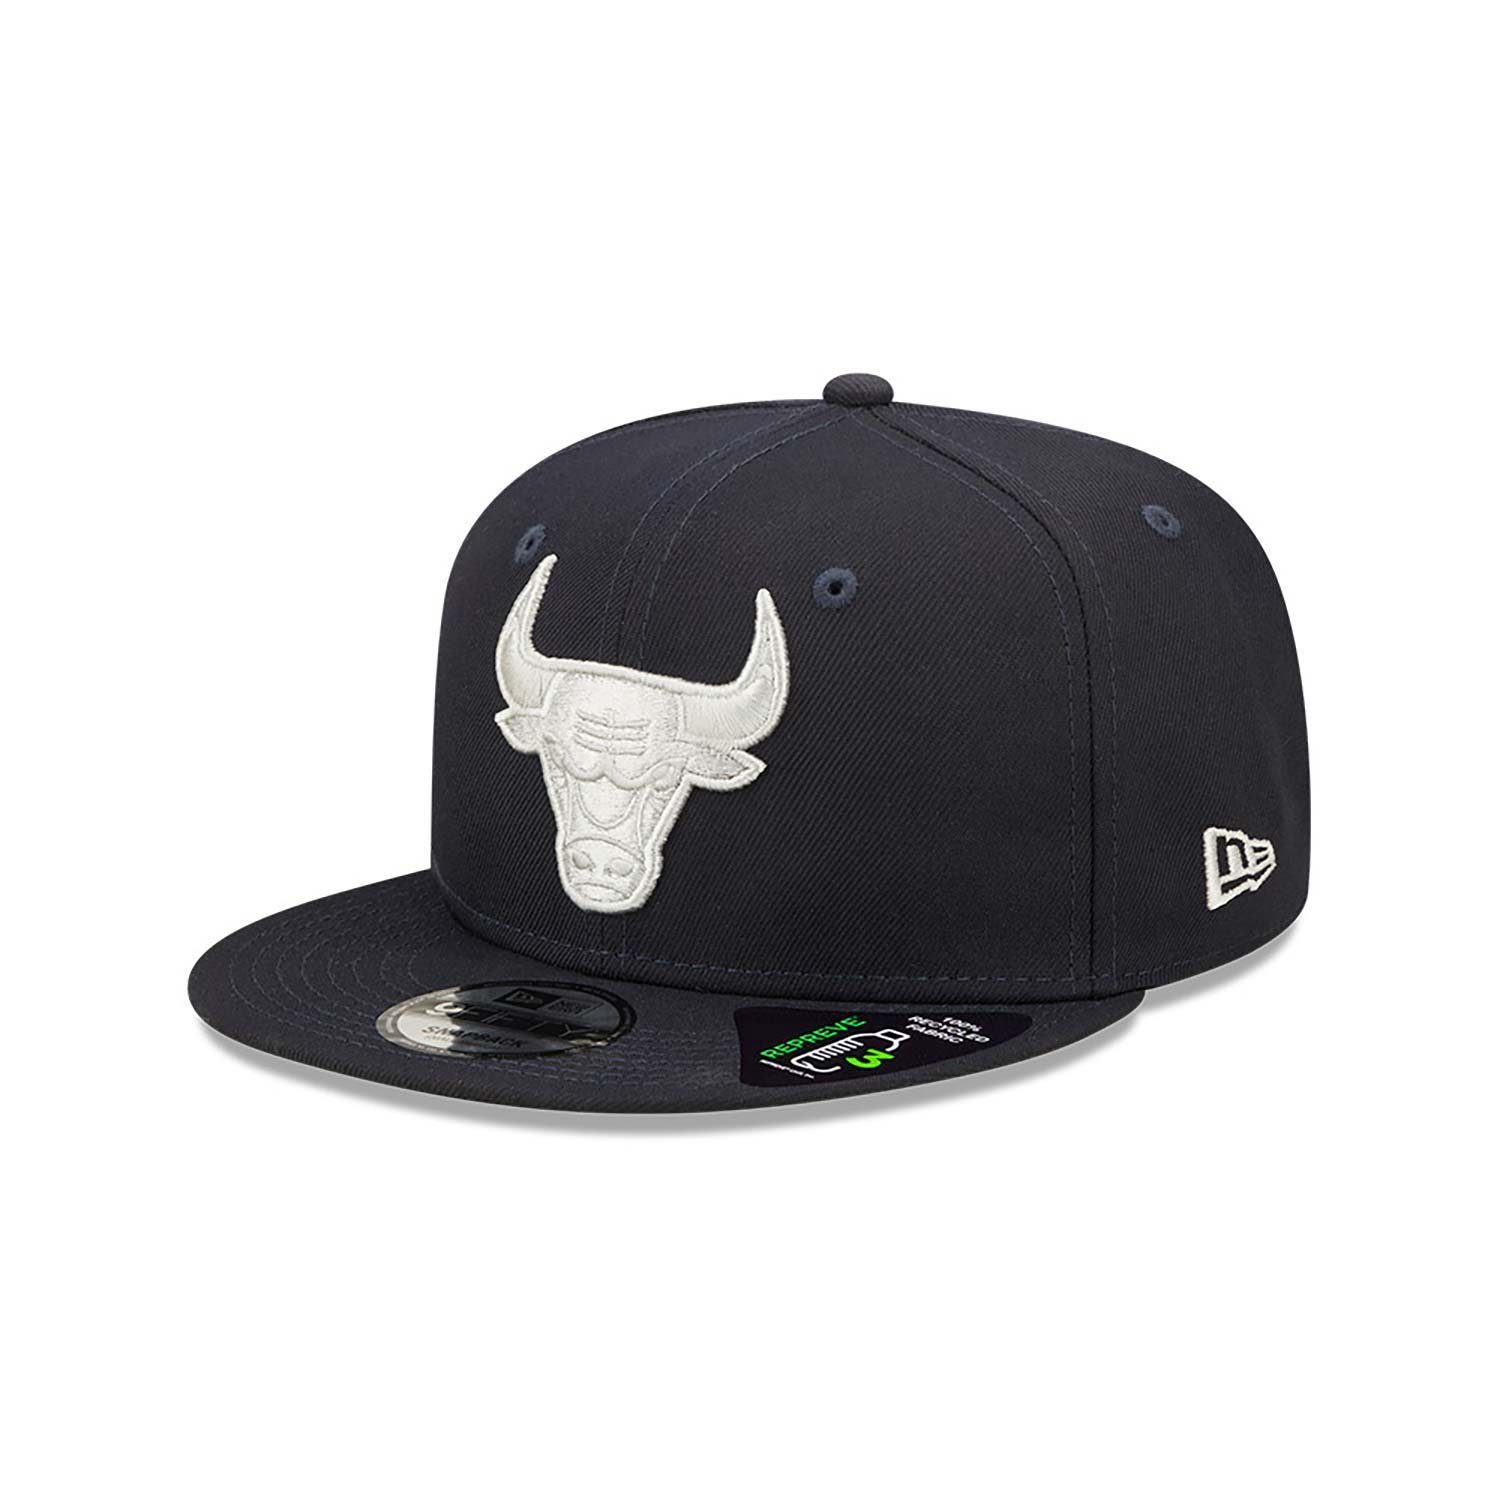 Chicago Snapback New Era Cap Bulls